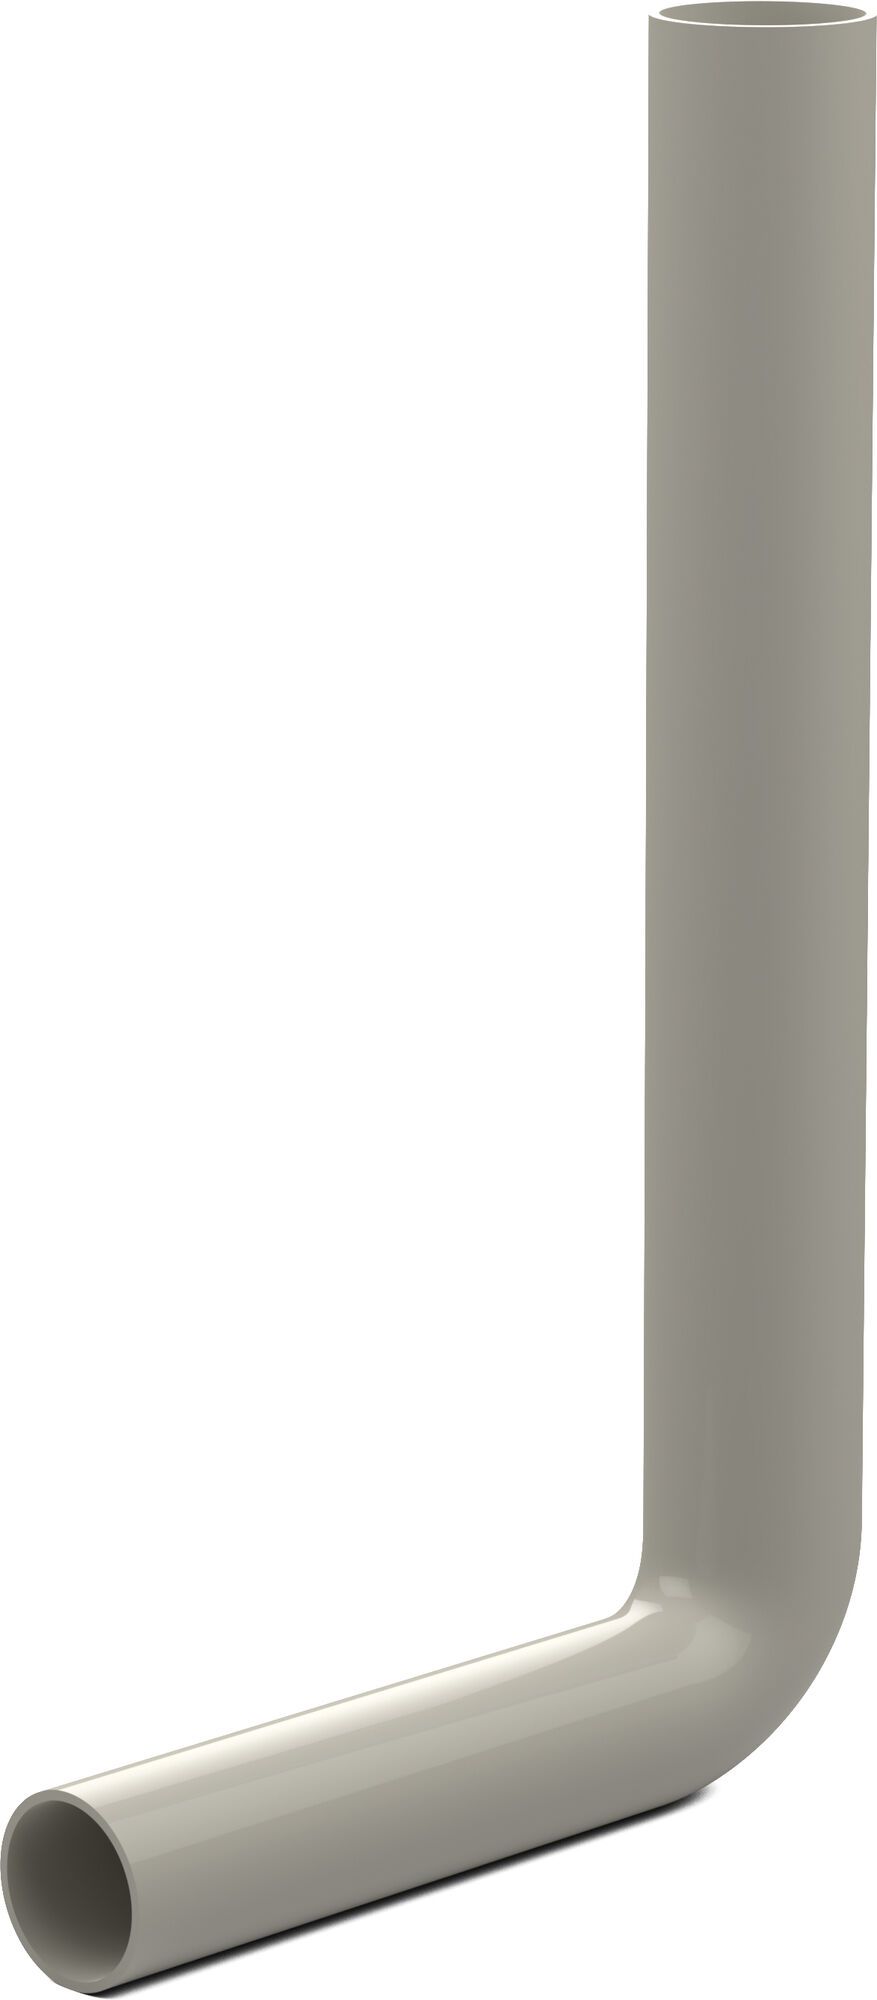 Flush pipe elbow 380 x 210 mm, pergamon